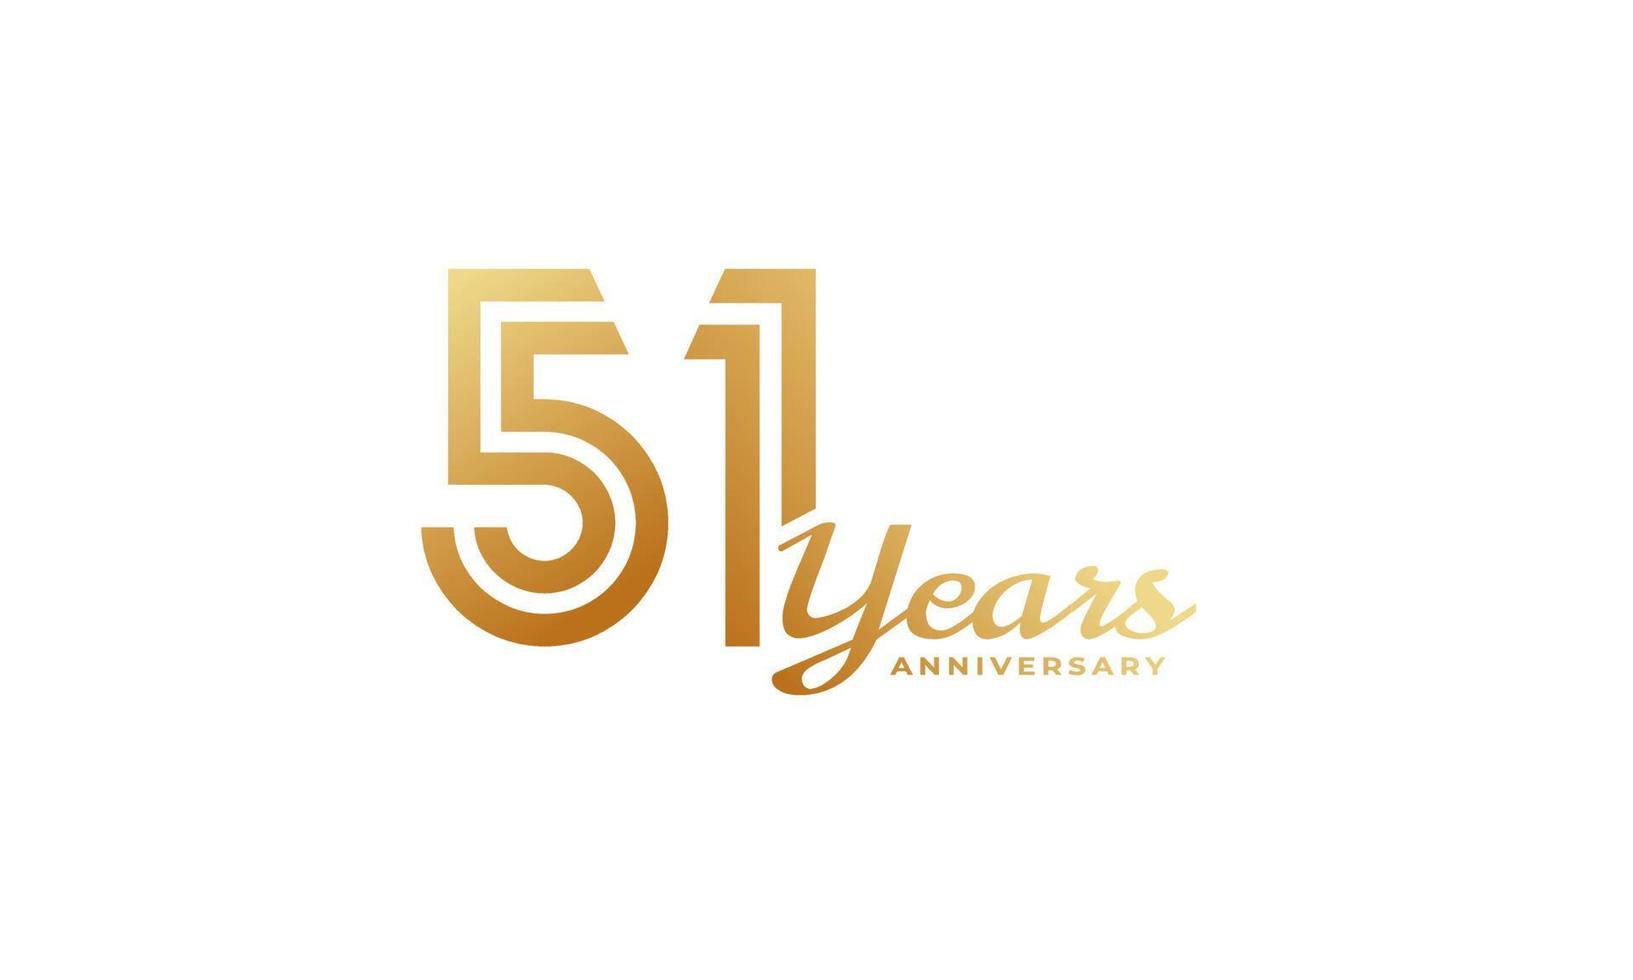 Celebración del aniversario de 51 años con escritura a mano en color dorado para el evento de celebración, boda, tarjeta de felicitación e invitación aislada en fondo blanco vector